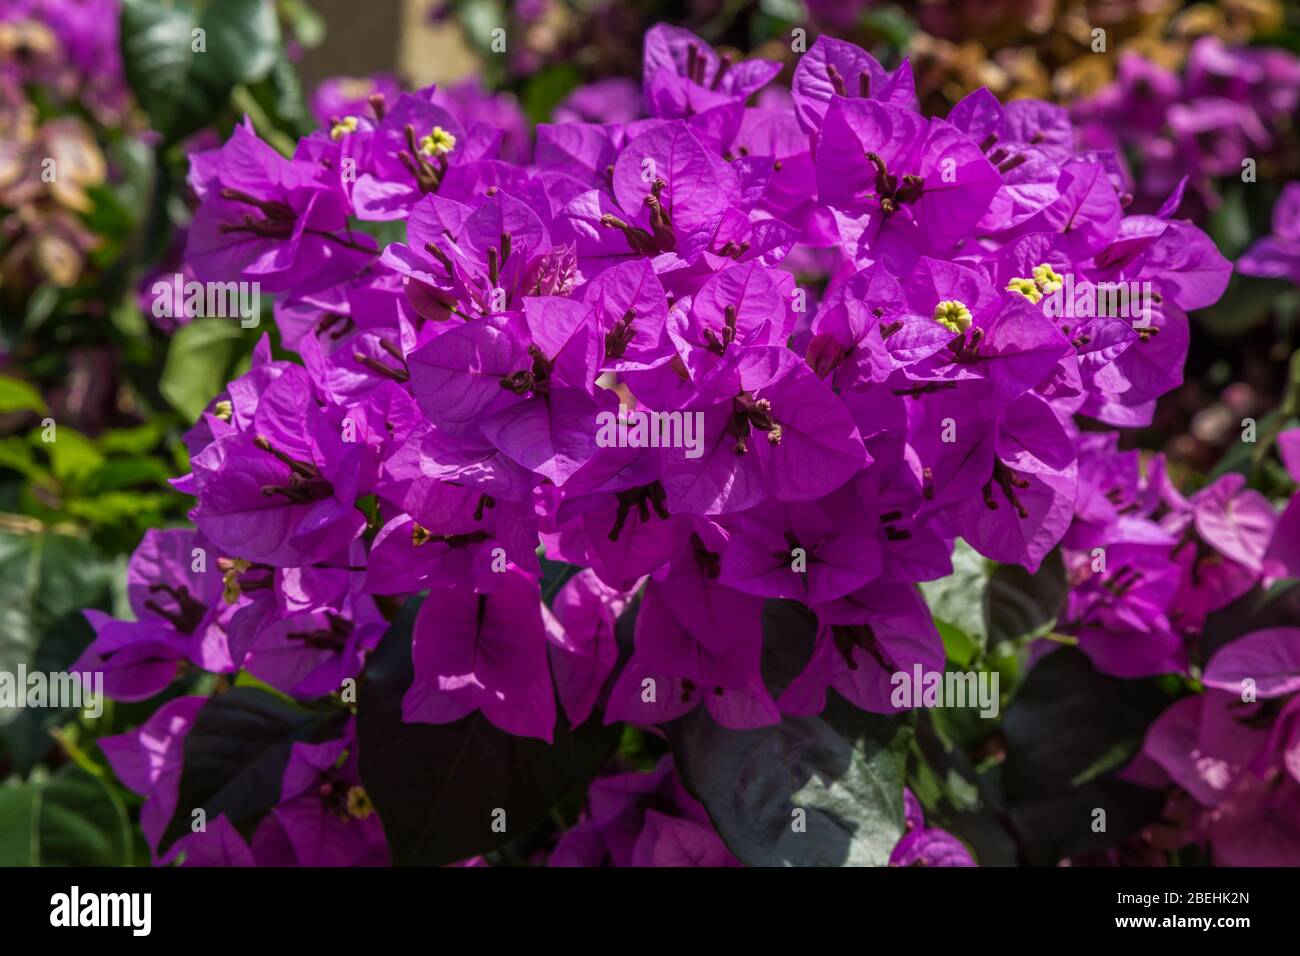 Nahaufnahme von violetten Bougainvillaea-Blüten (Bougainvillea glabra), vor einem grünen Hintergrund. Stockfoto